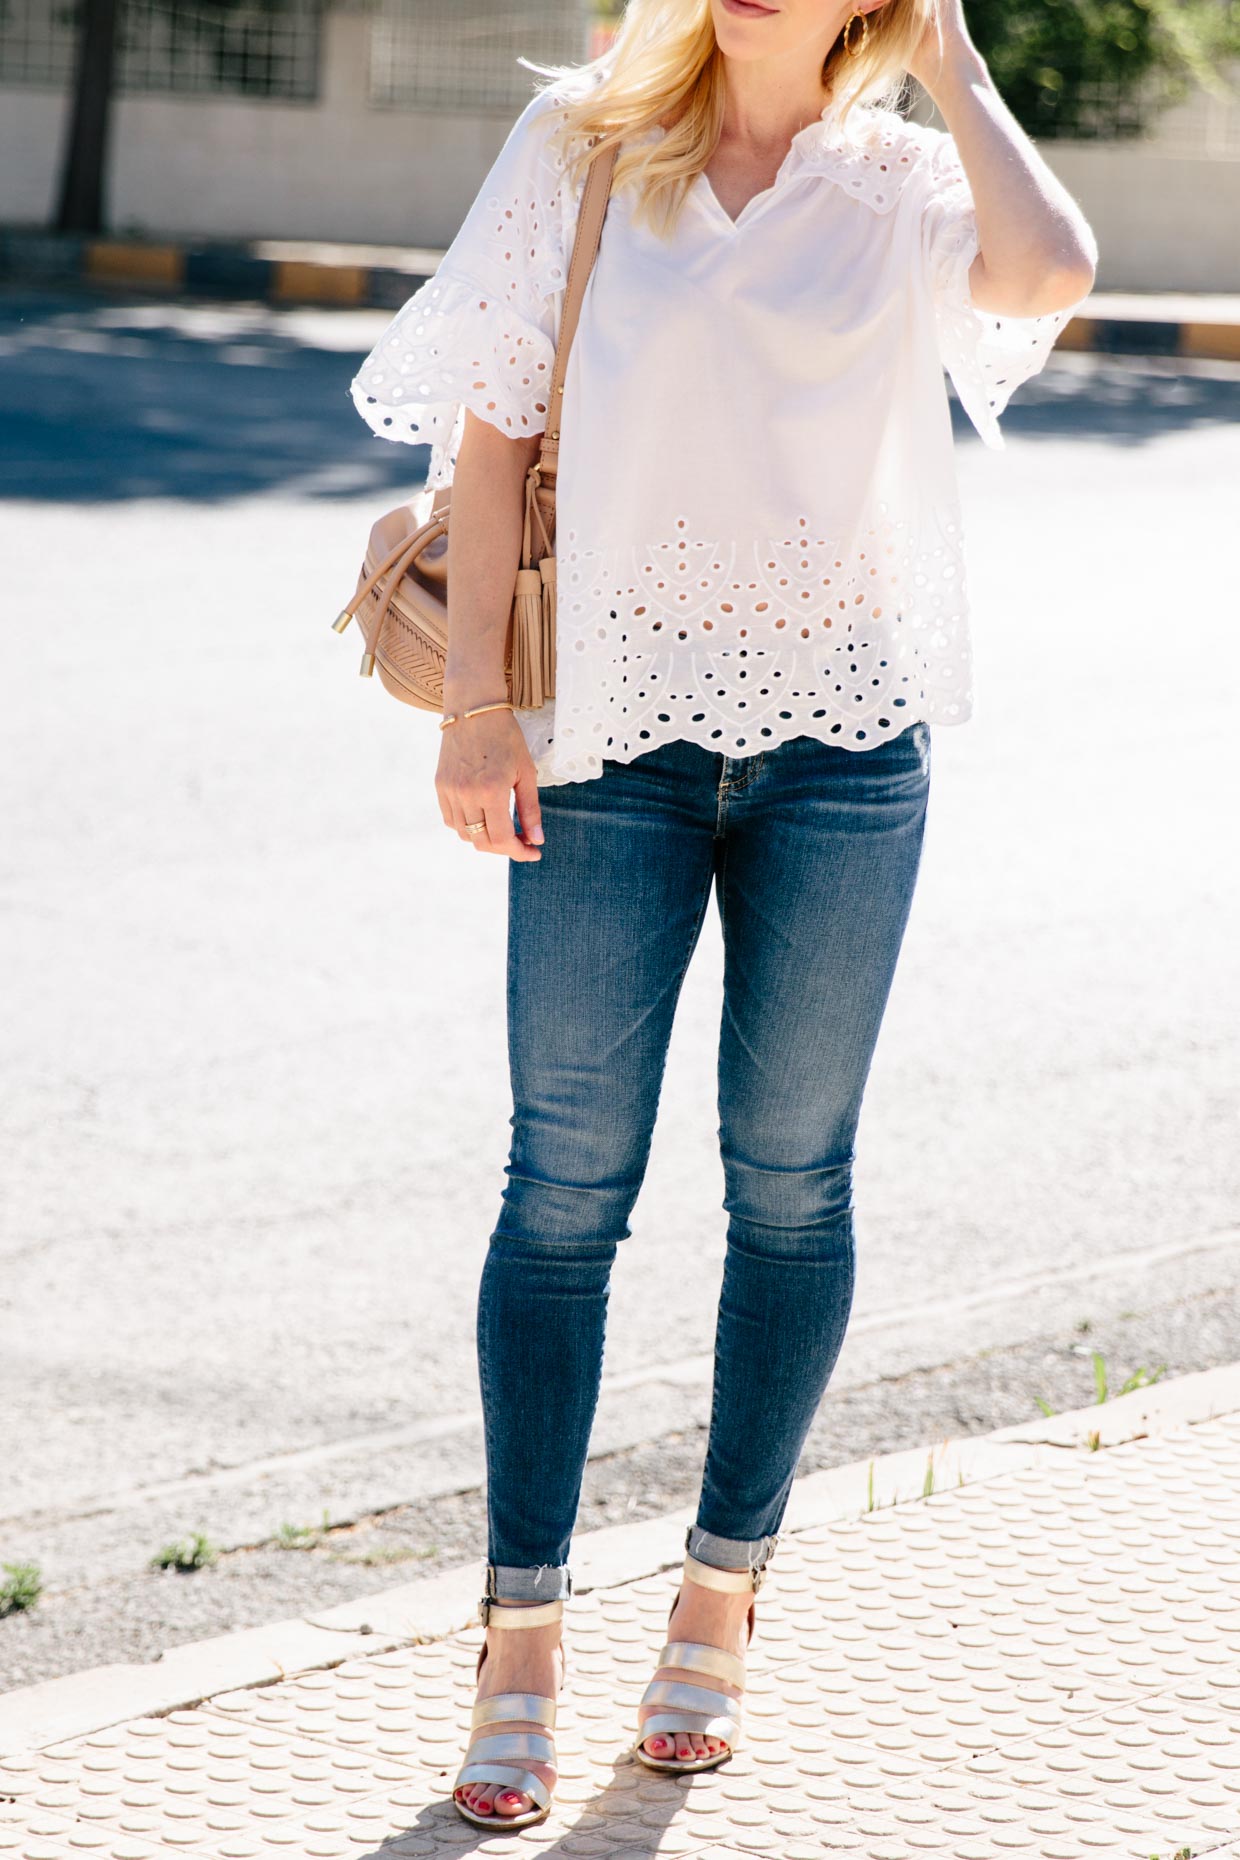 Easy Summer Style: White Eyelet Blouse & Metallic Sandals - Meagan's Moda